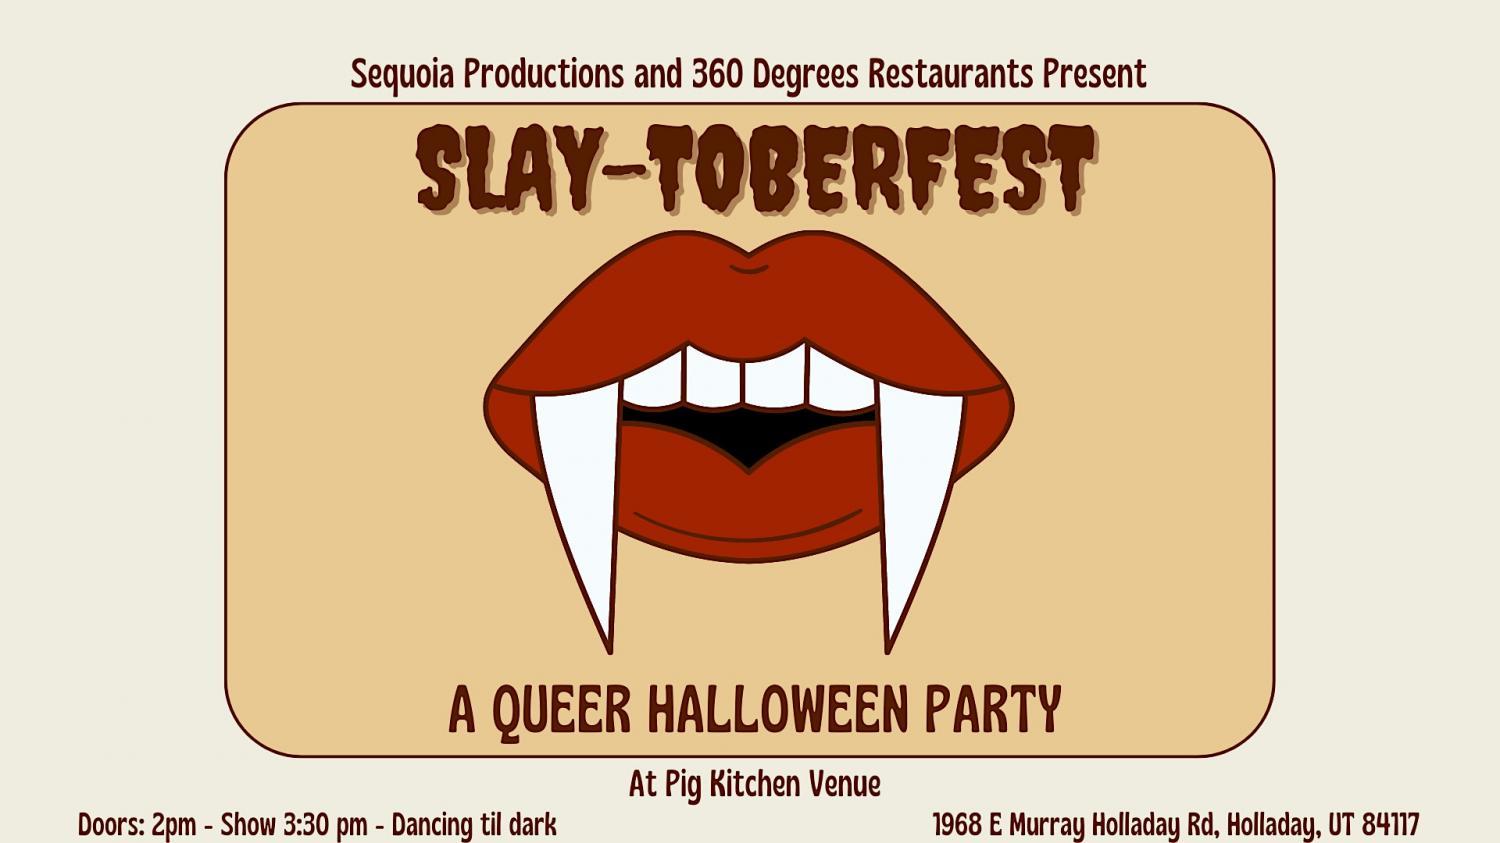 Slay-Toberfest
Sat Oct 29, 2:00 PM - Sat Oct 29, 9:00 PM
in 9 days